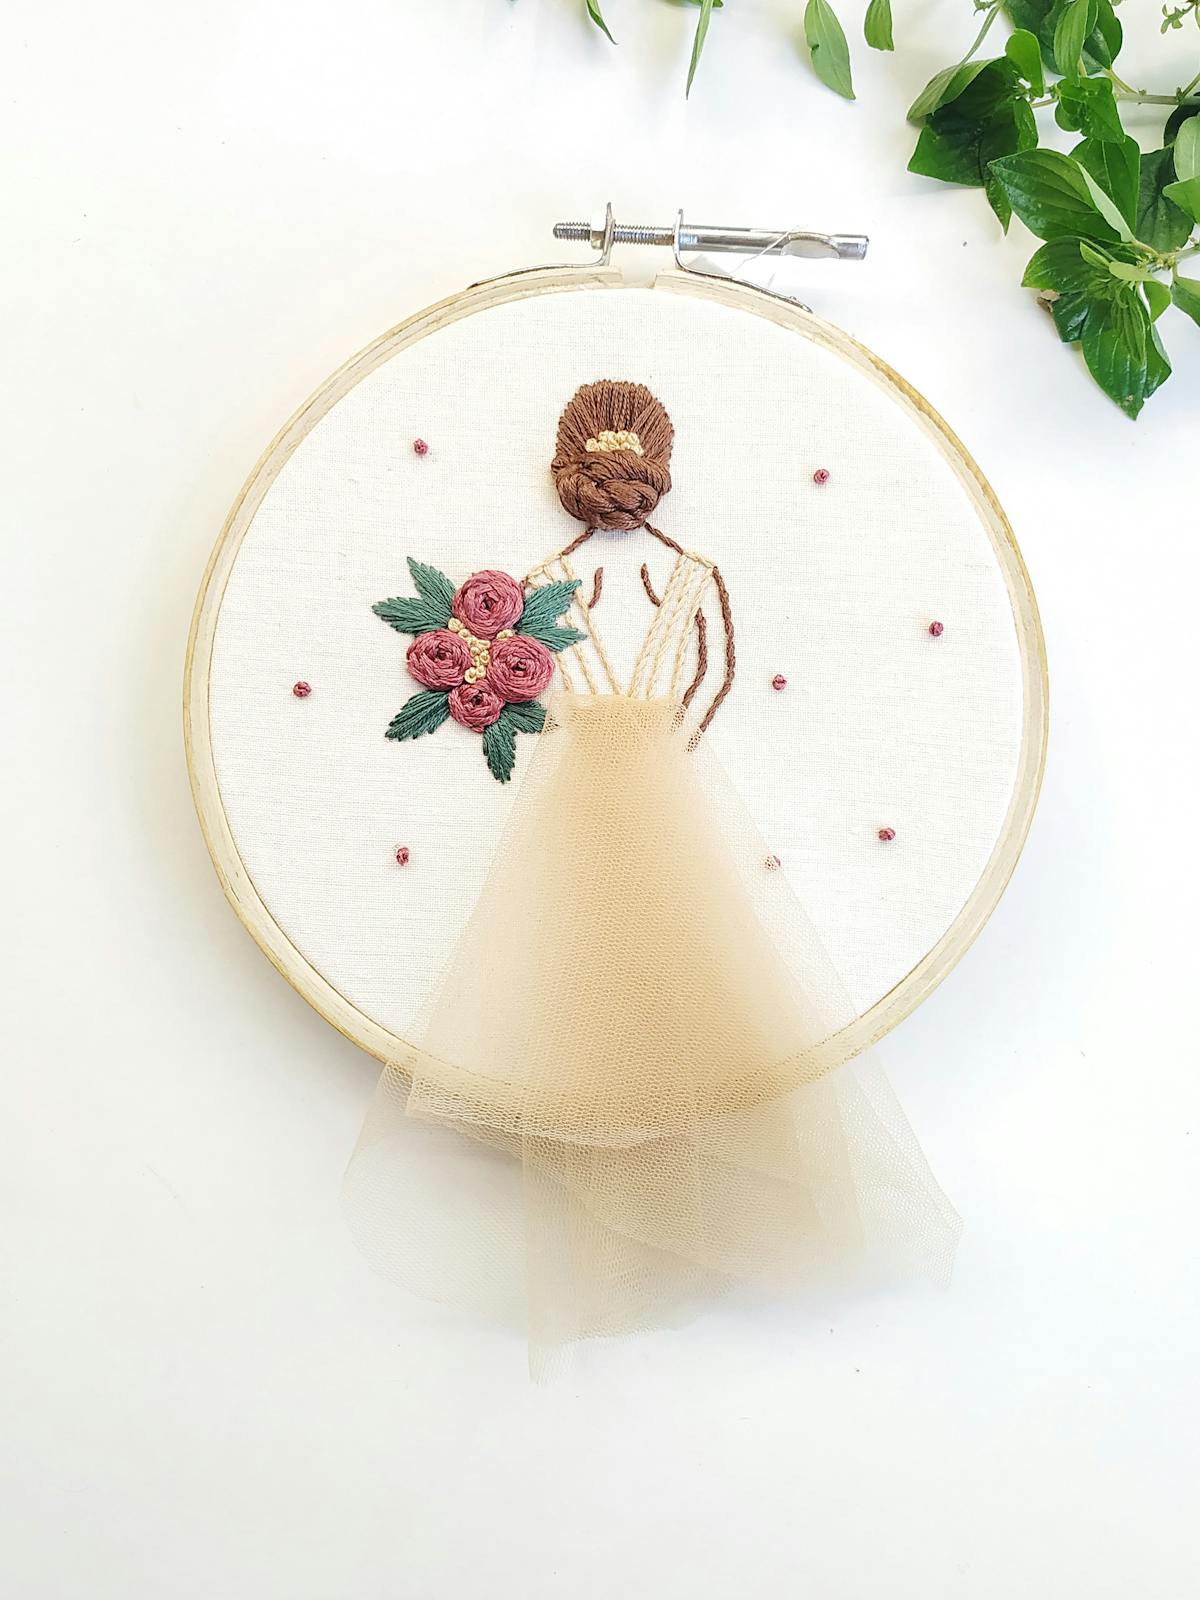 Hoopies Art wedding embroidery